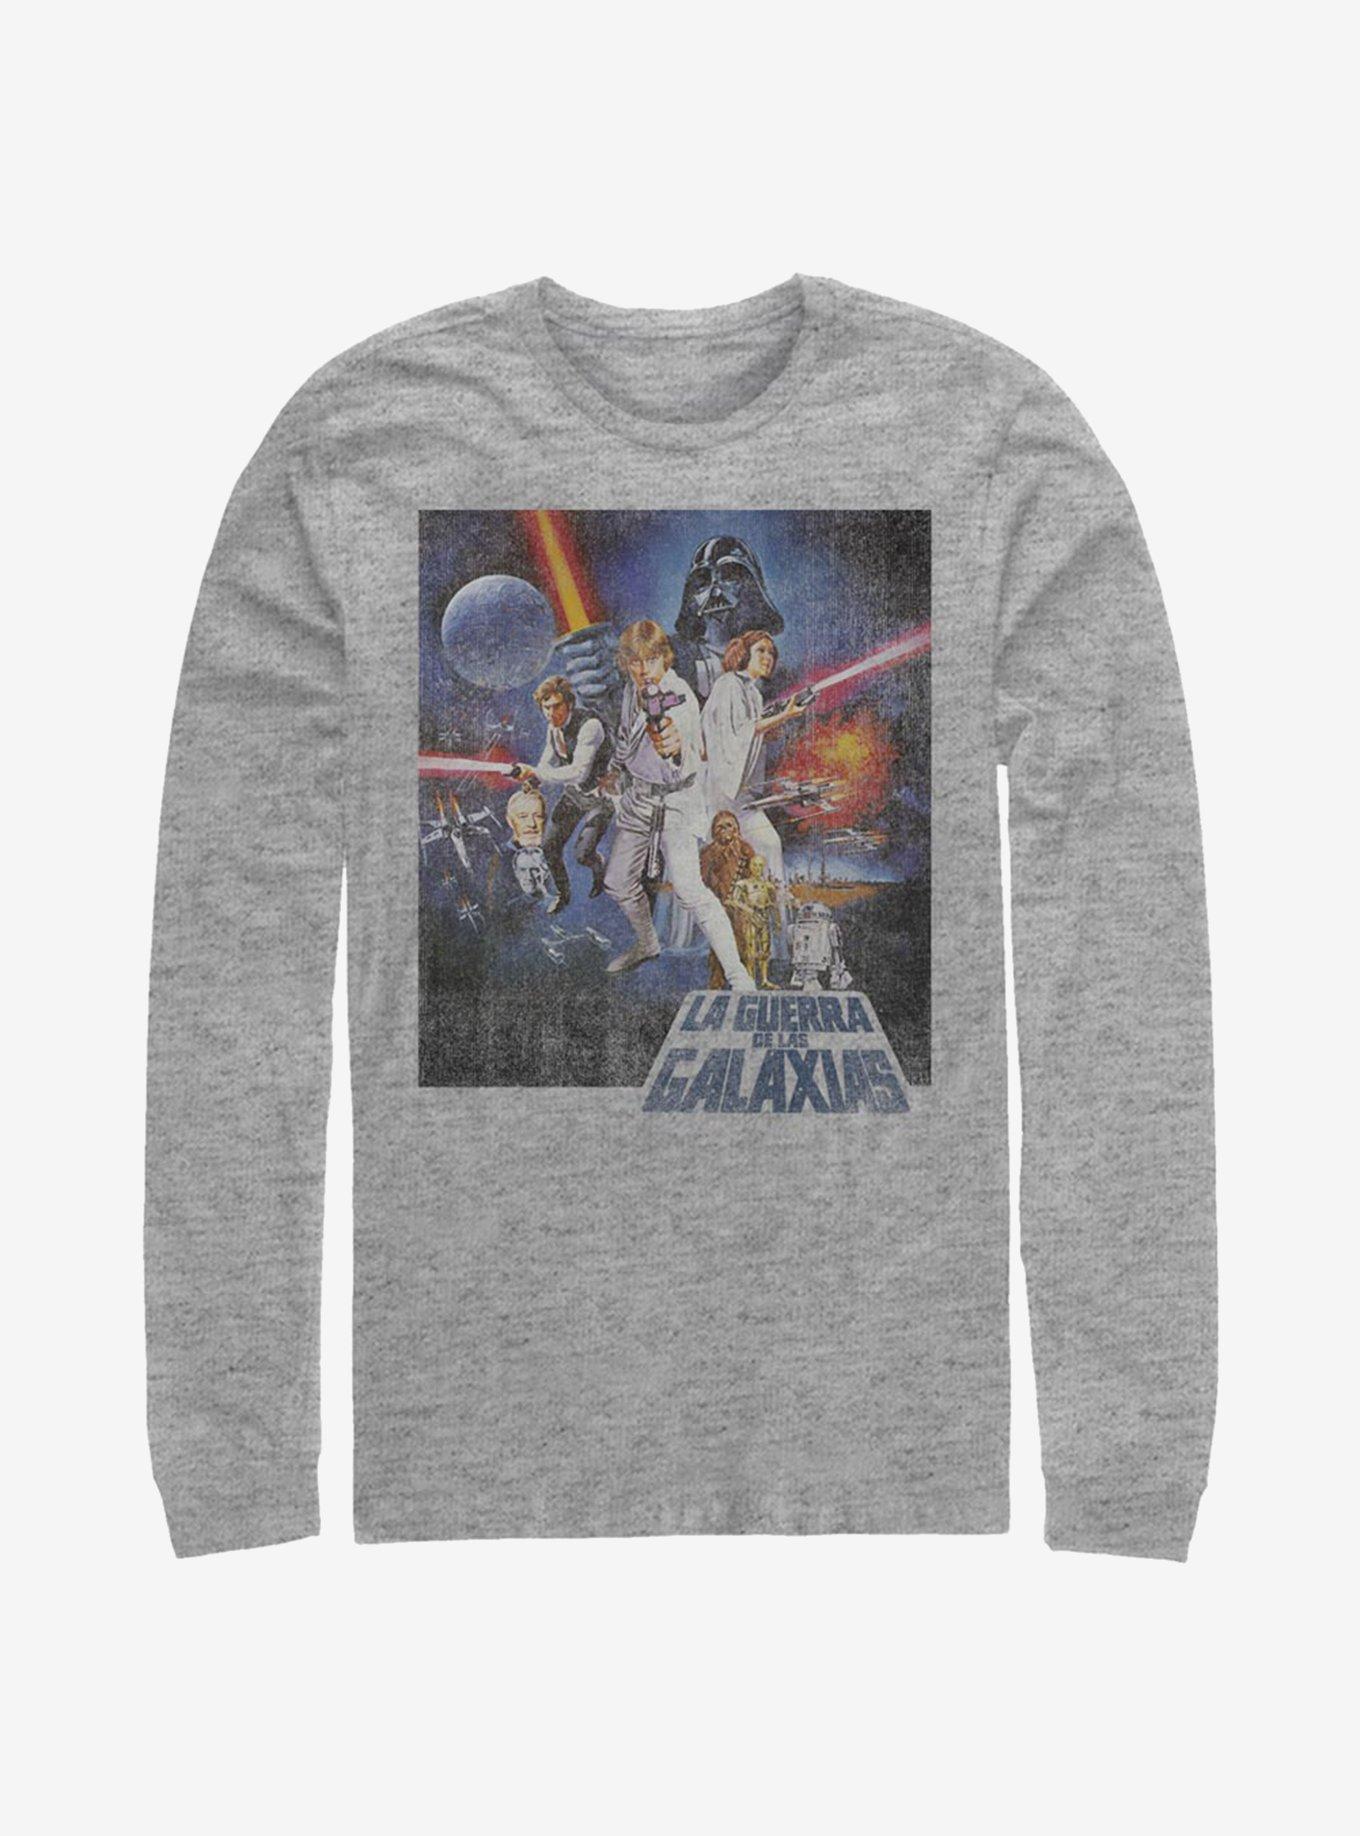 Star Wars Episode IV A New Hope La Guerra De Las Galaxias Poster Long-Sleeve T-Shirt, ATH HTR, hi-res